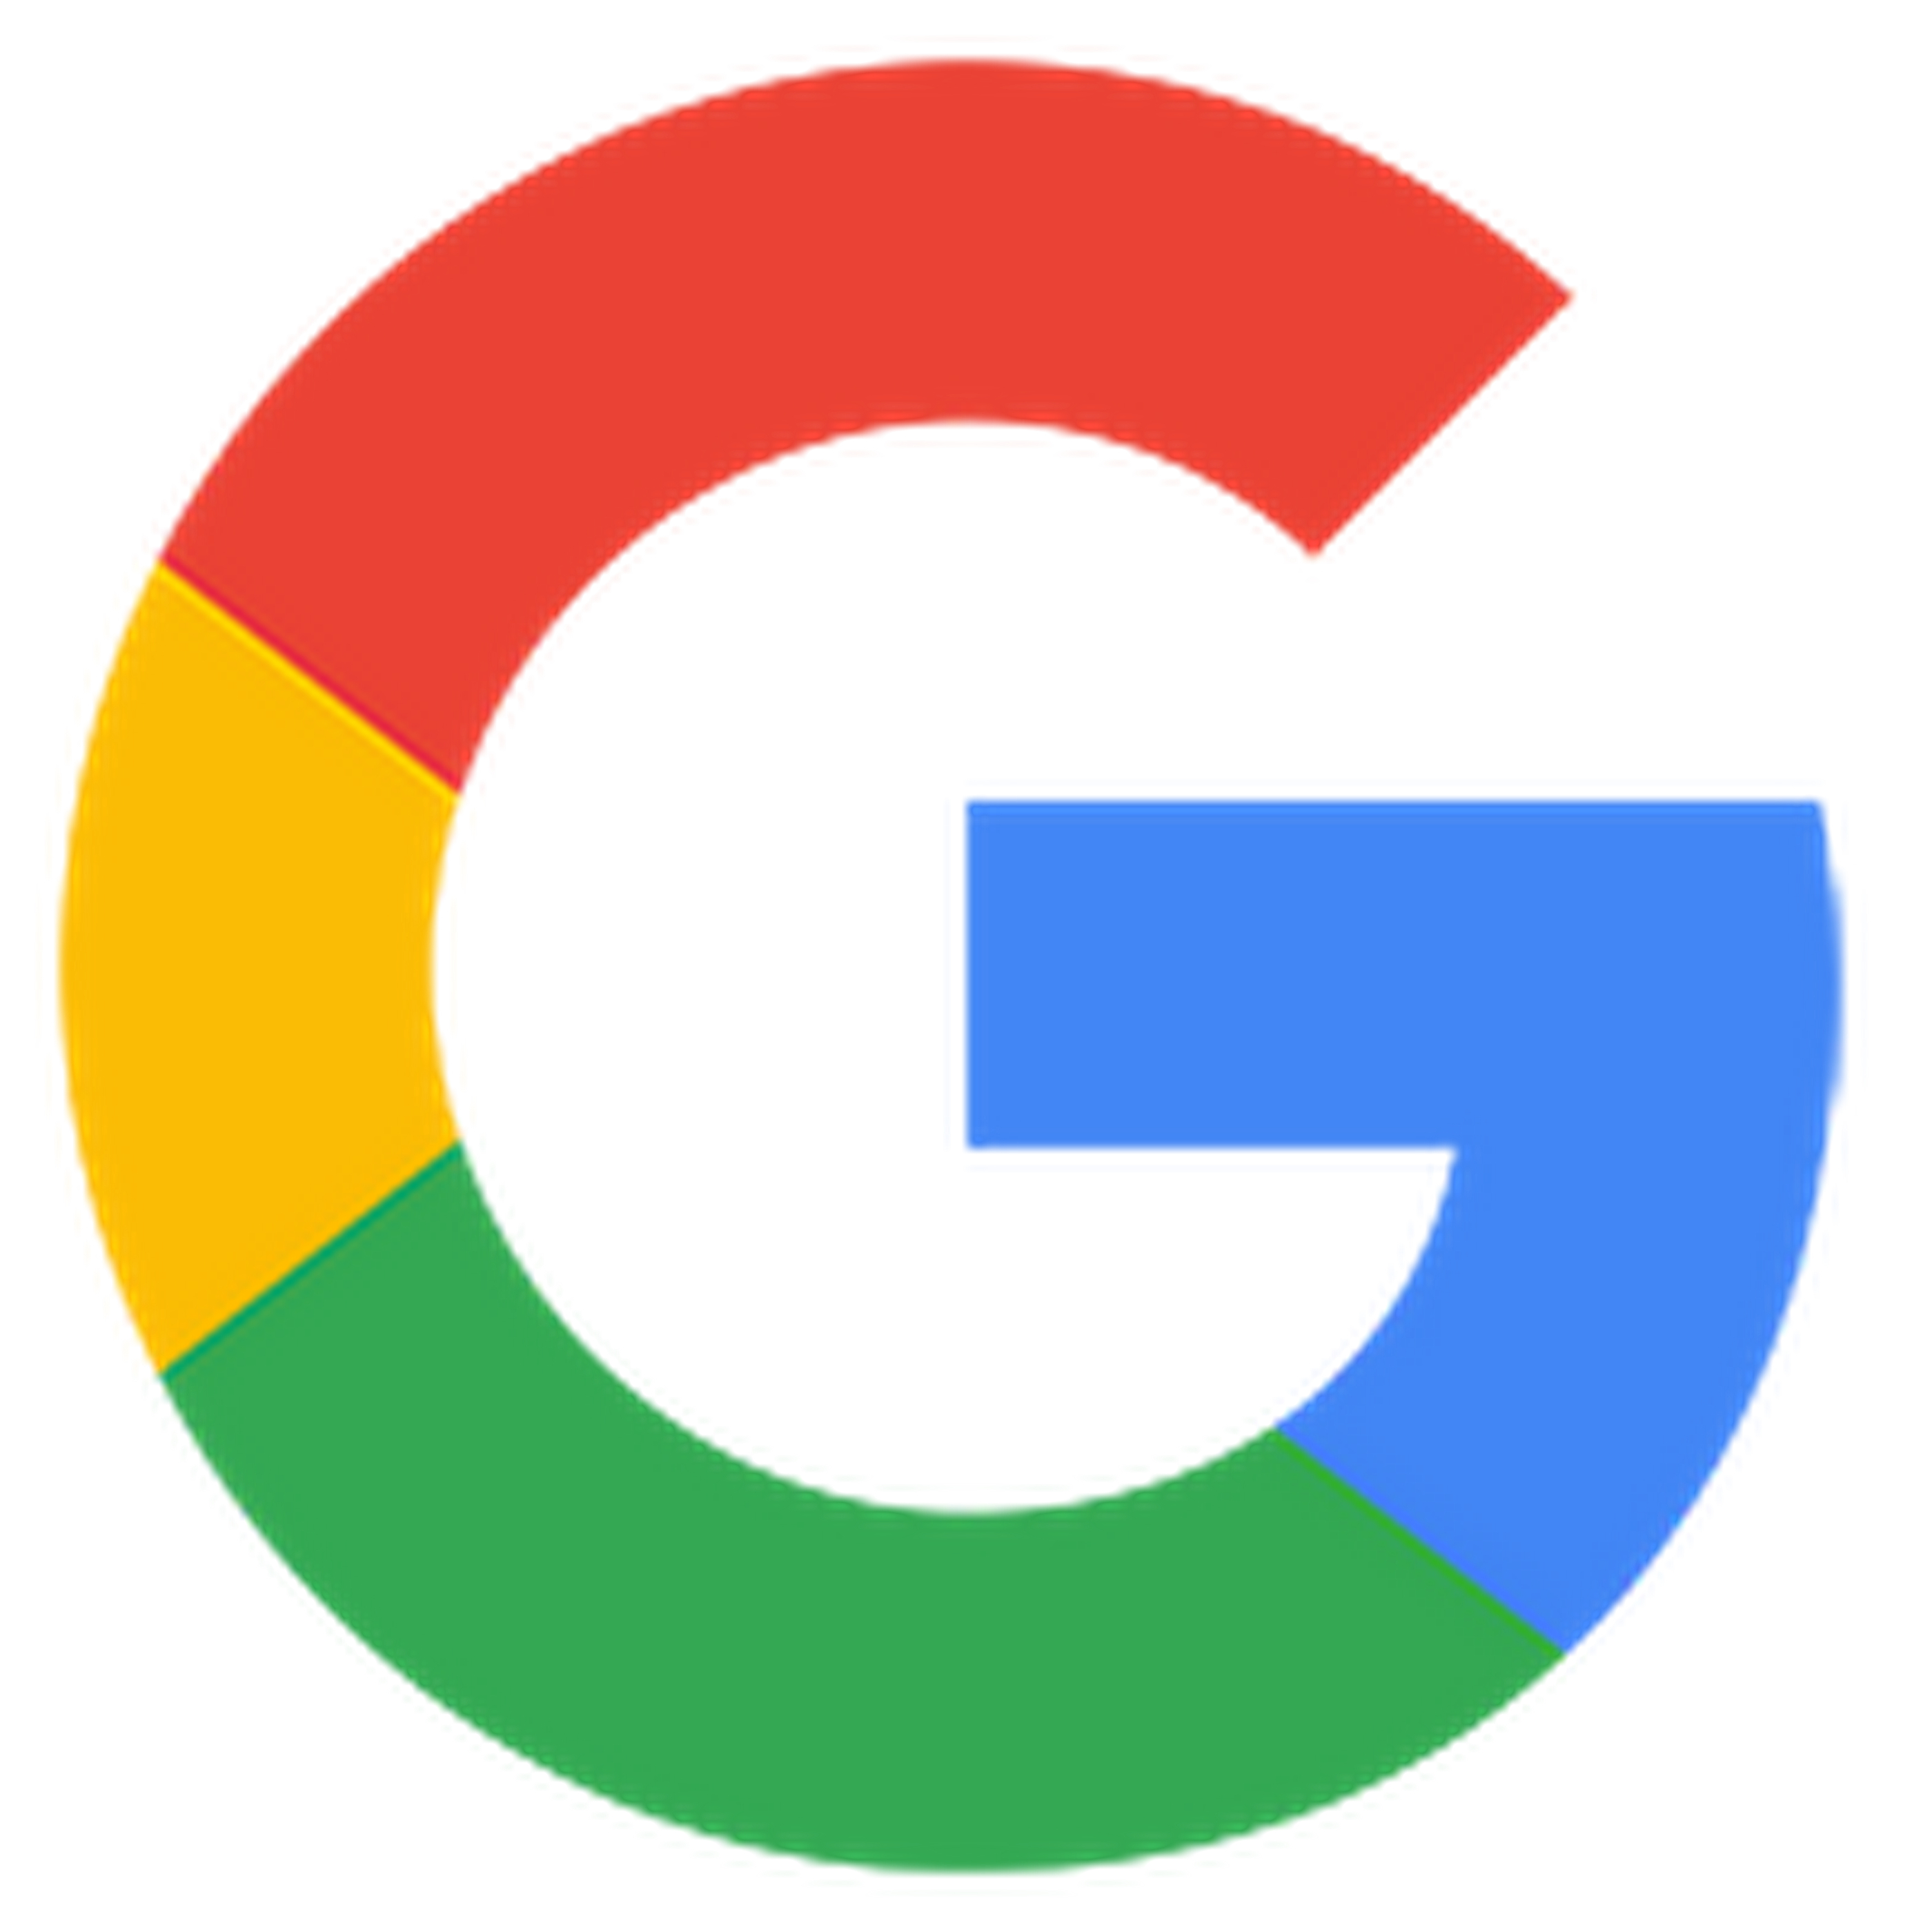 [google]搜索引擎是怎样工作的